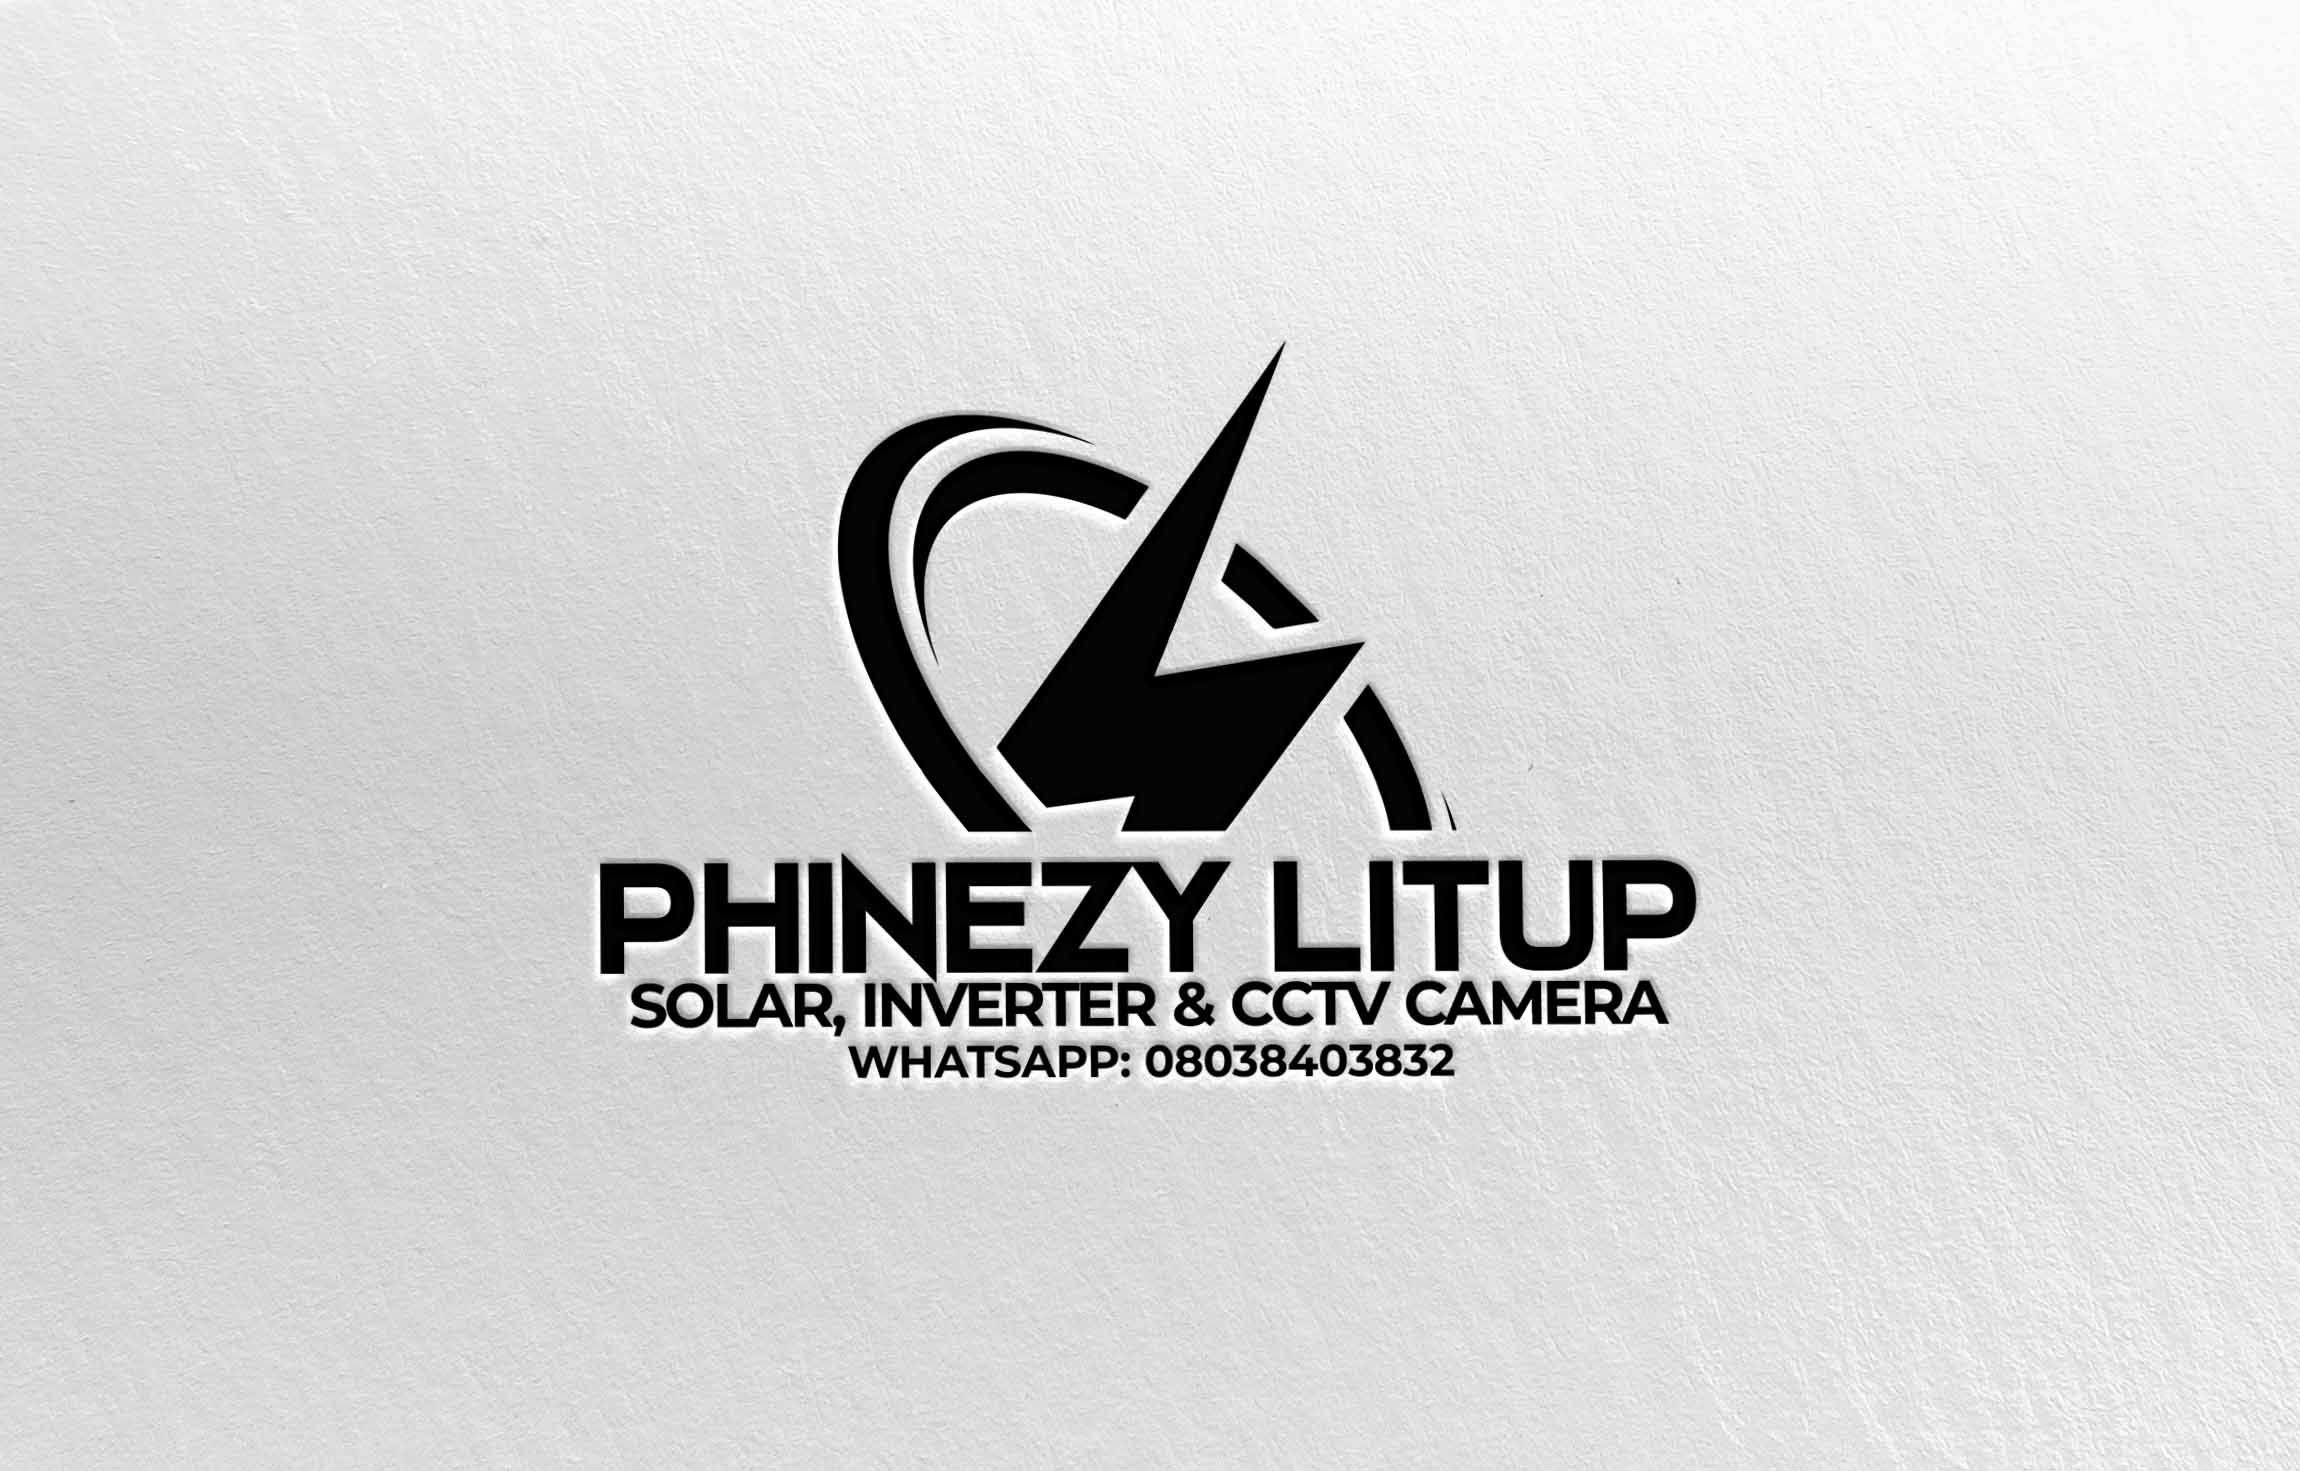 Phinezy Litup provider